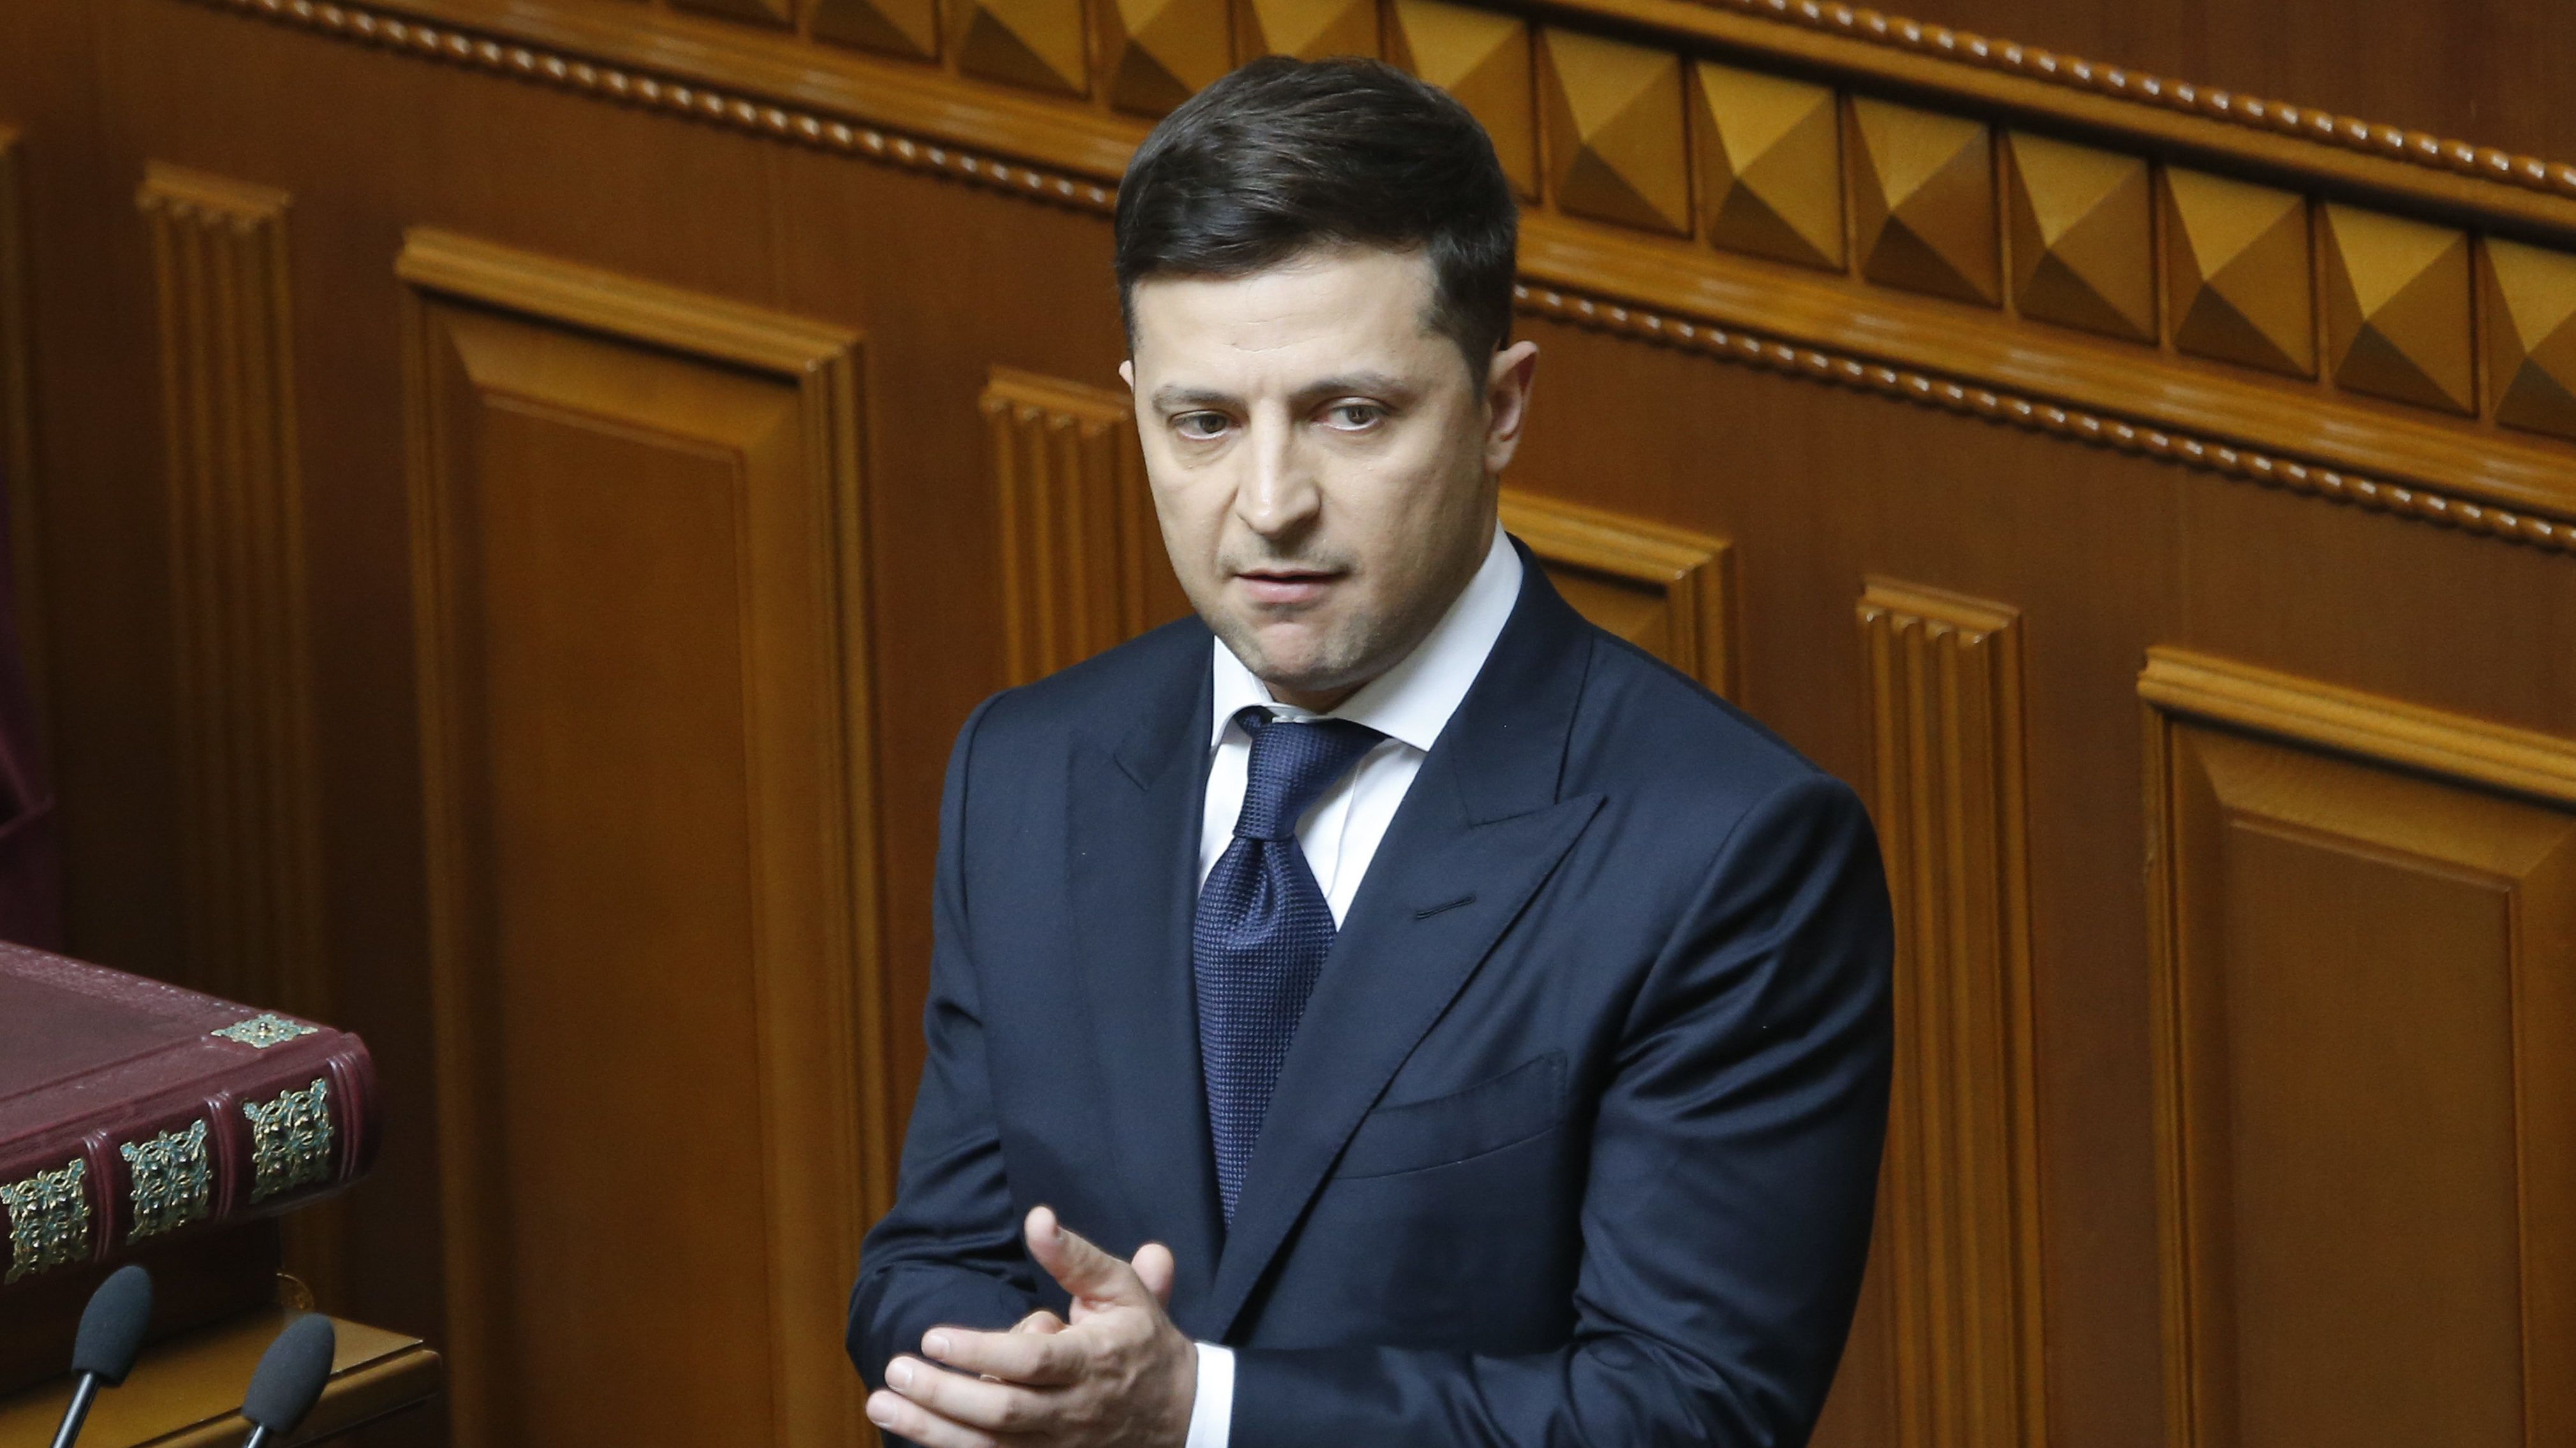 Letette az esküt és rögtön feloszlatta a parlamentet az új ukrán elnök